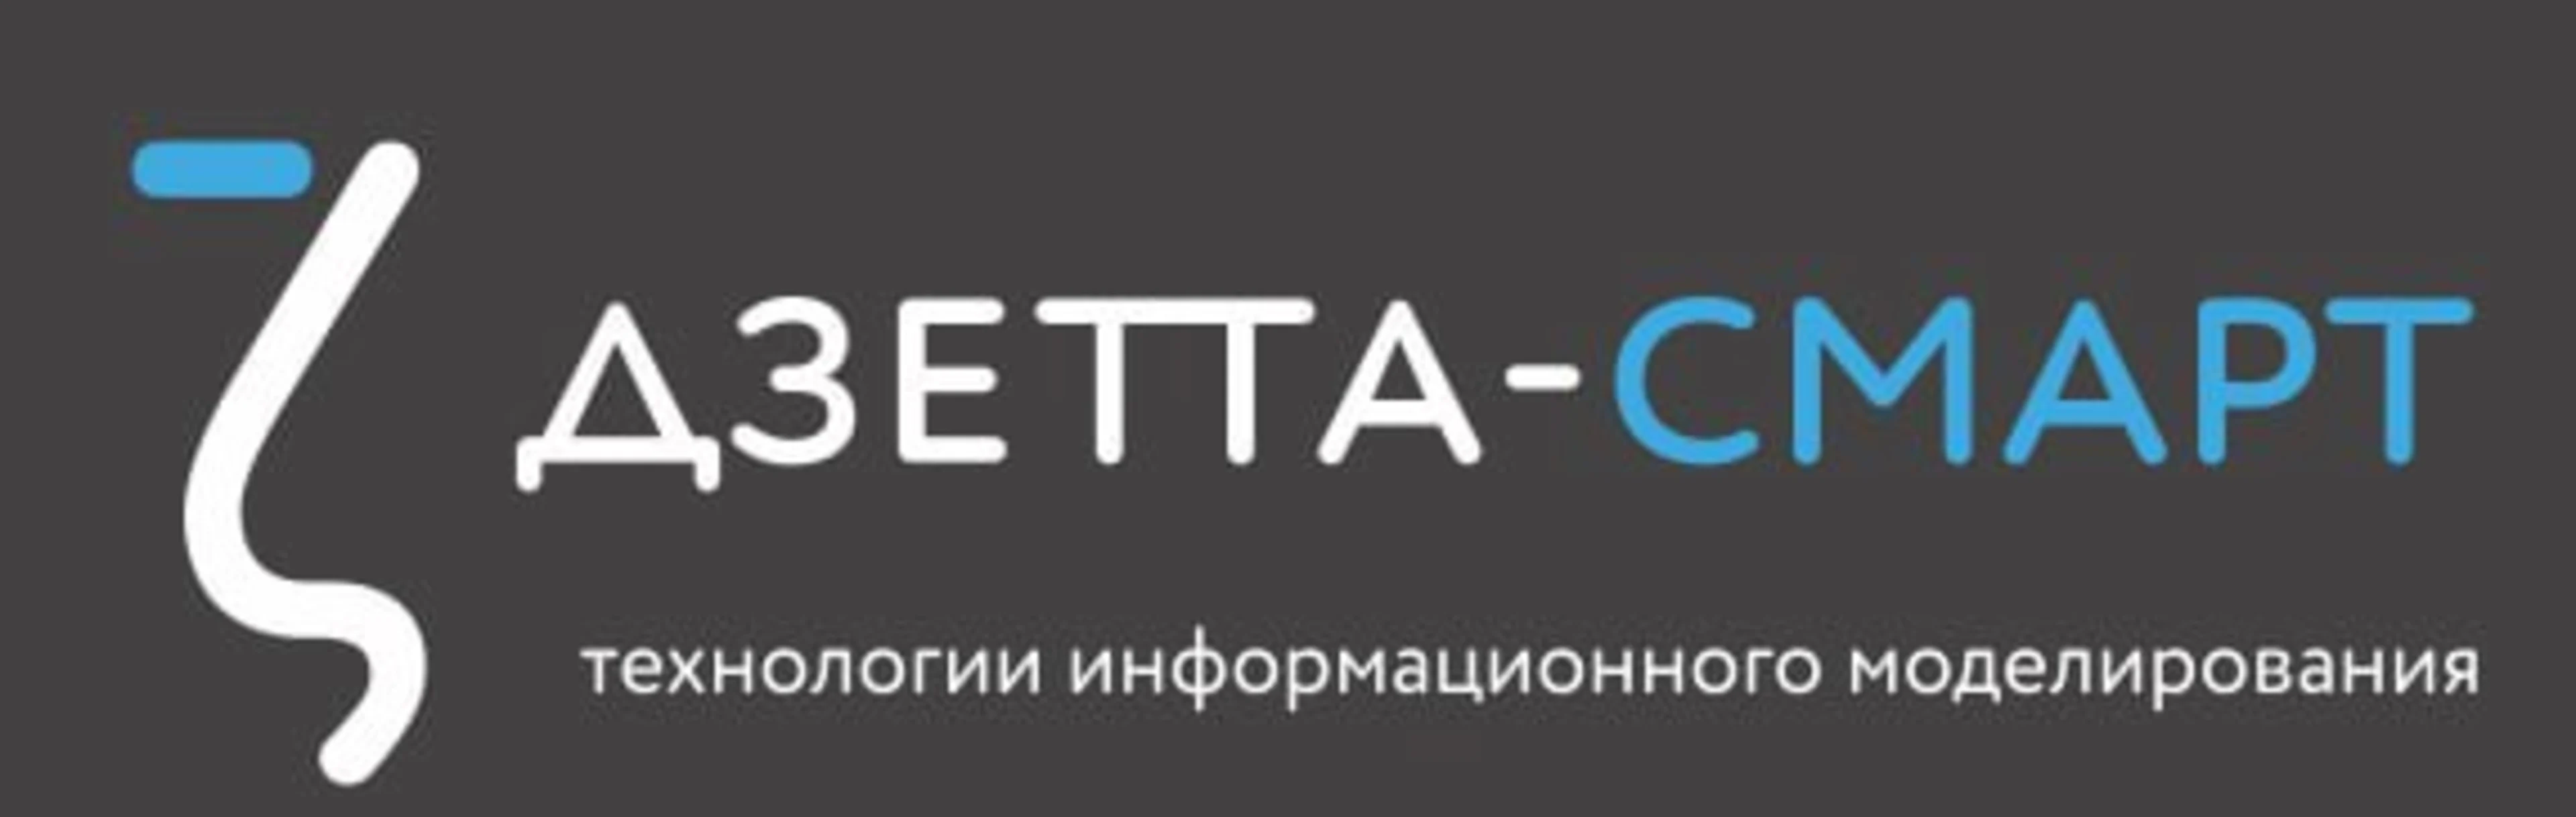 dzetta logo